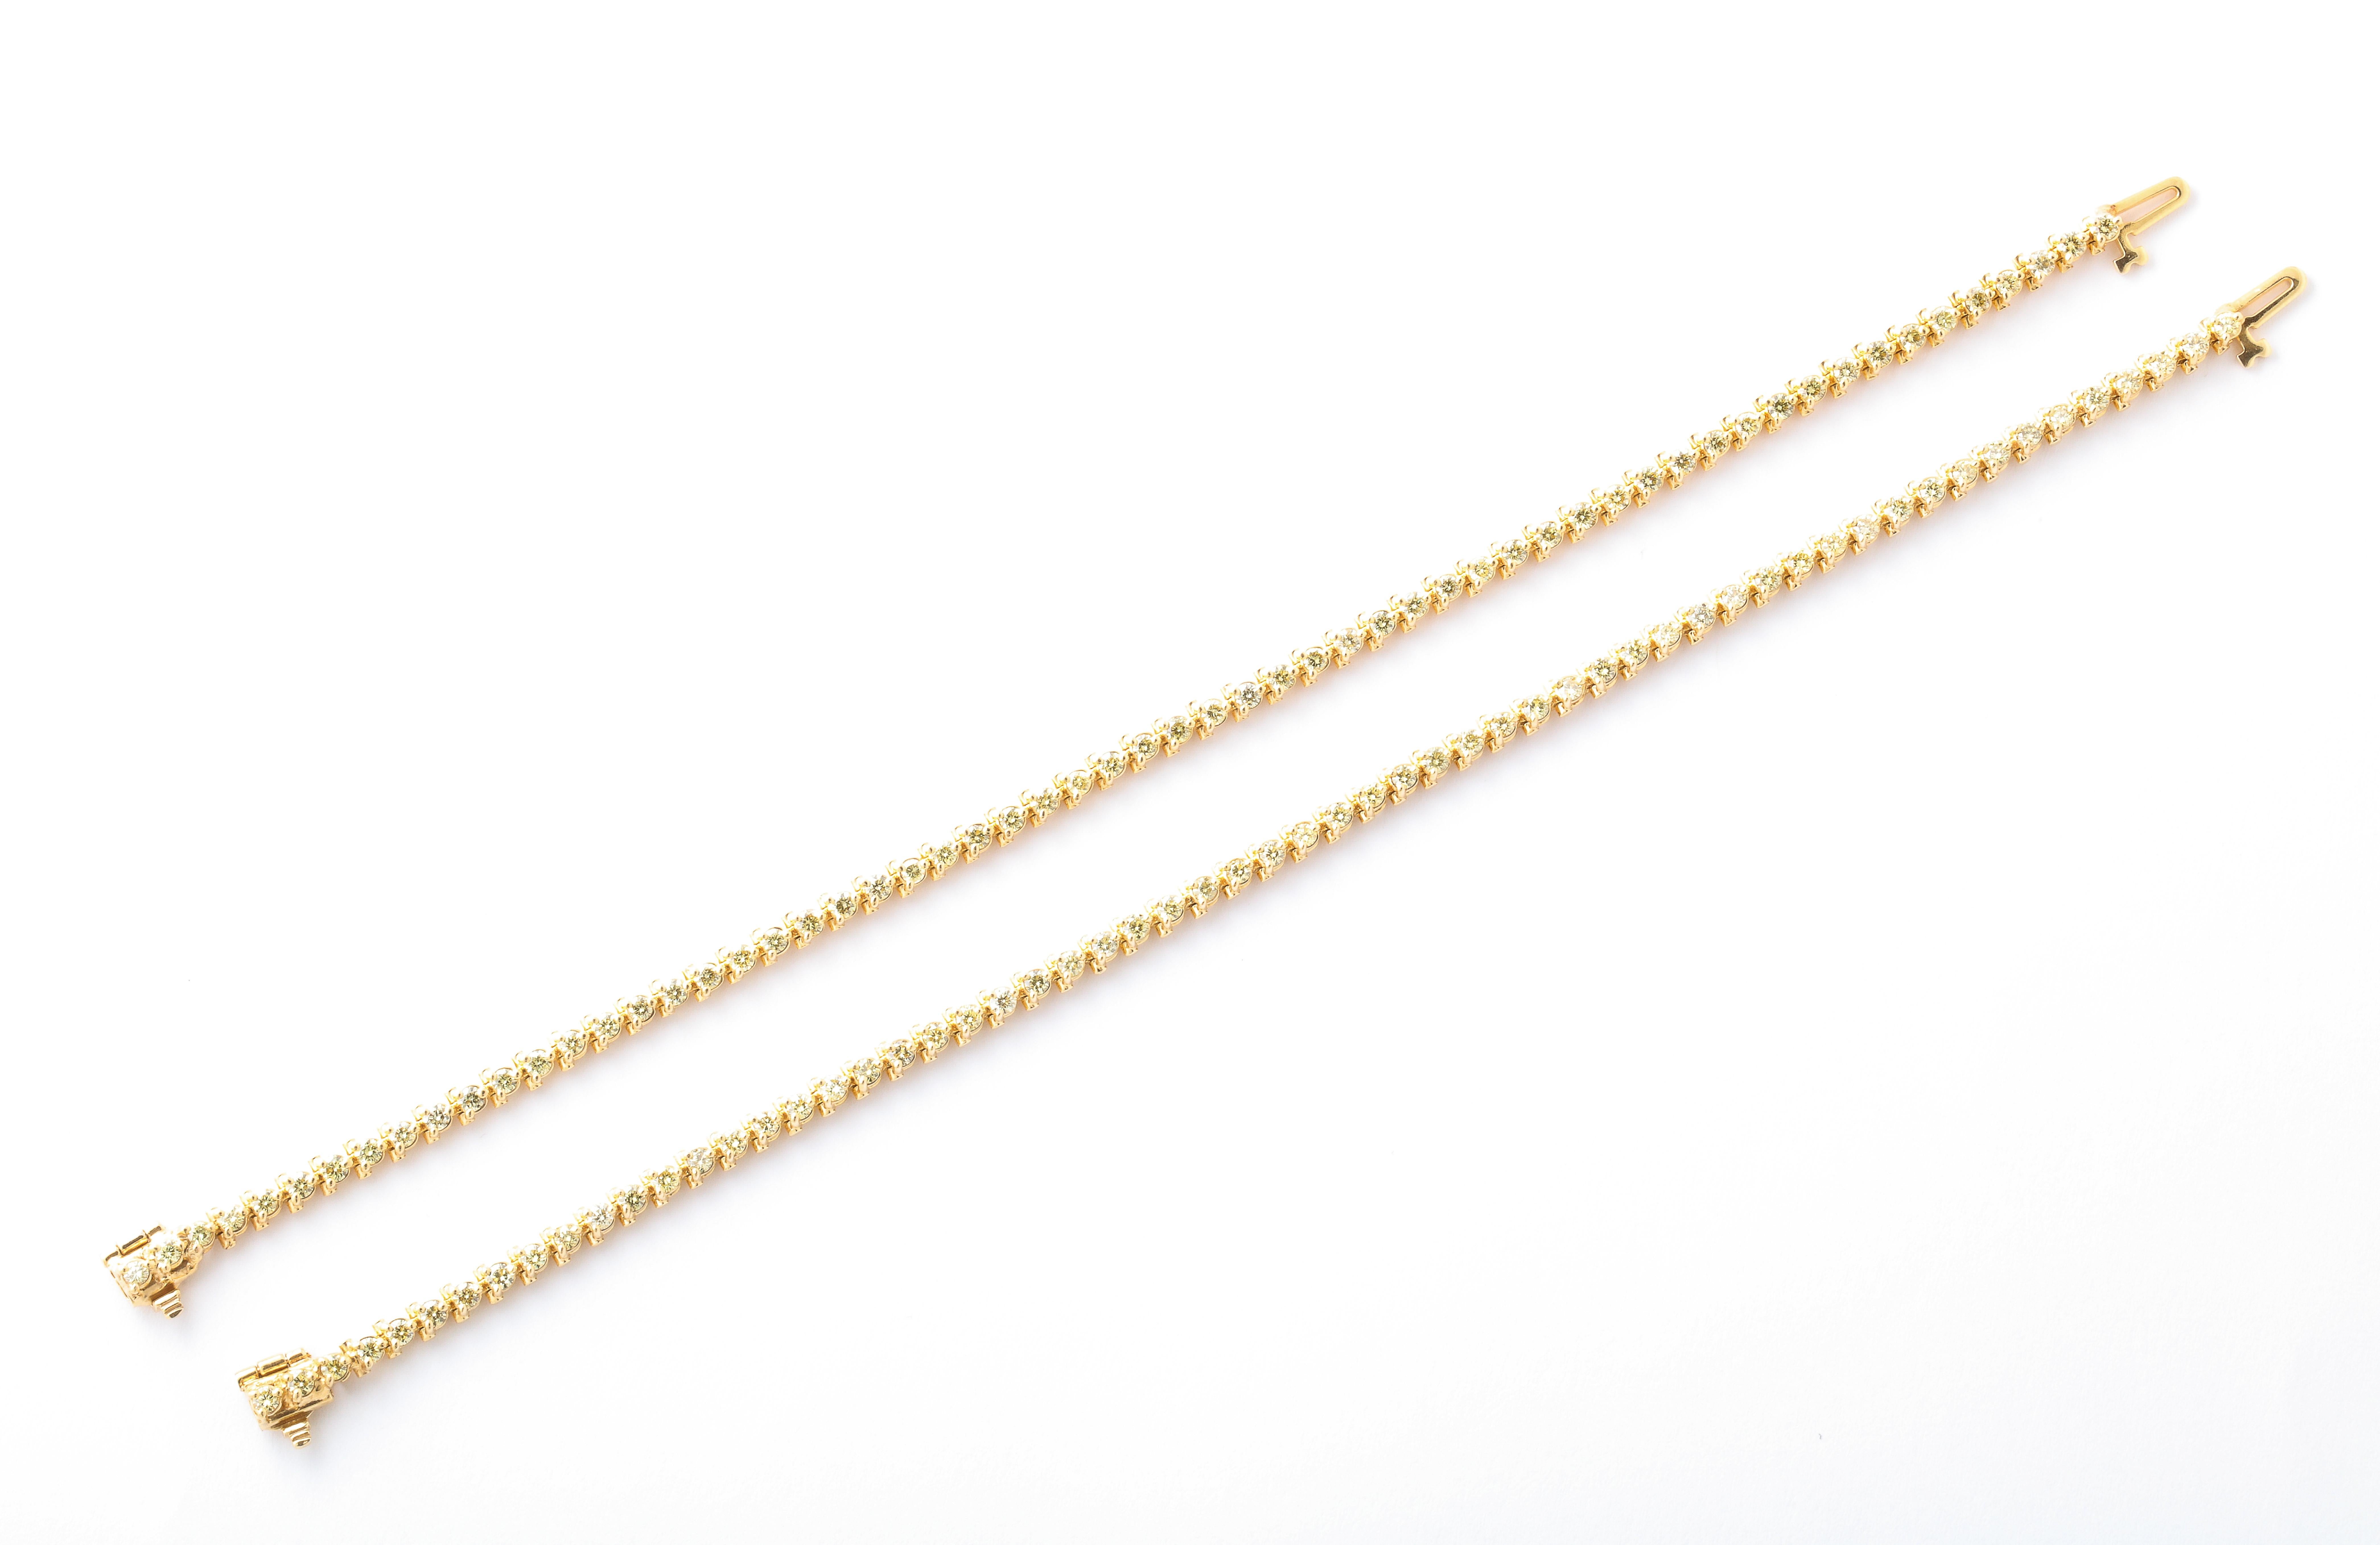 
Une paire de bracelets de tennis en diamants jaunes assortis - PARFAITEMENT empilables ! 

Chaque bracelet est serti de 2,90 carats de diamants jaunes ronds pour un total de 5,80 carats de diamants sertis dans de l'or jaune 14k. 

Longueur de 7